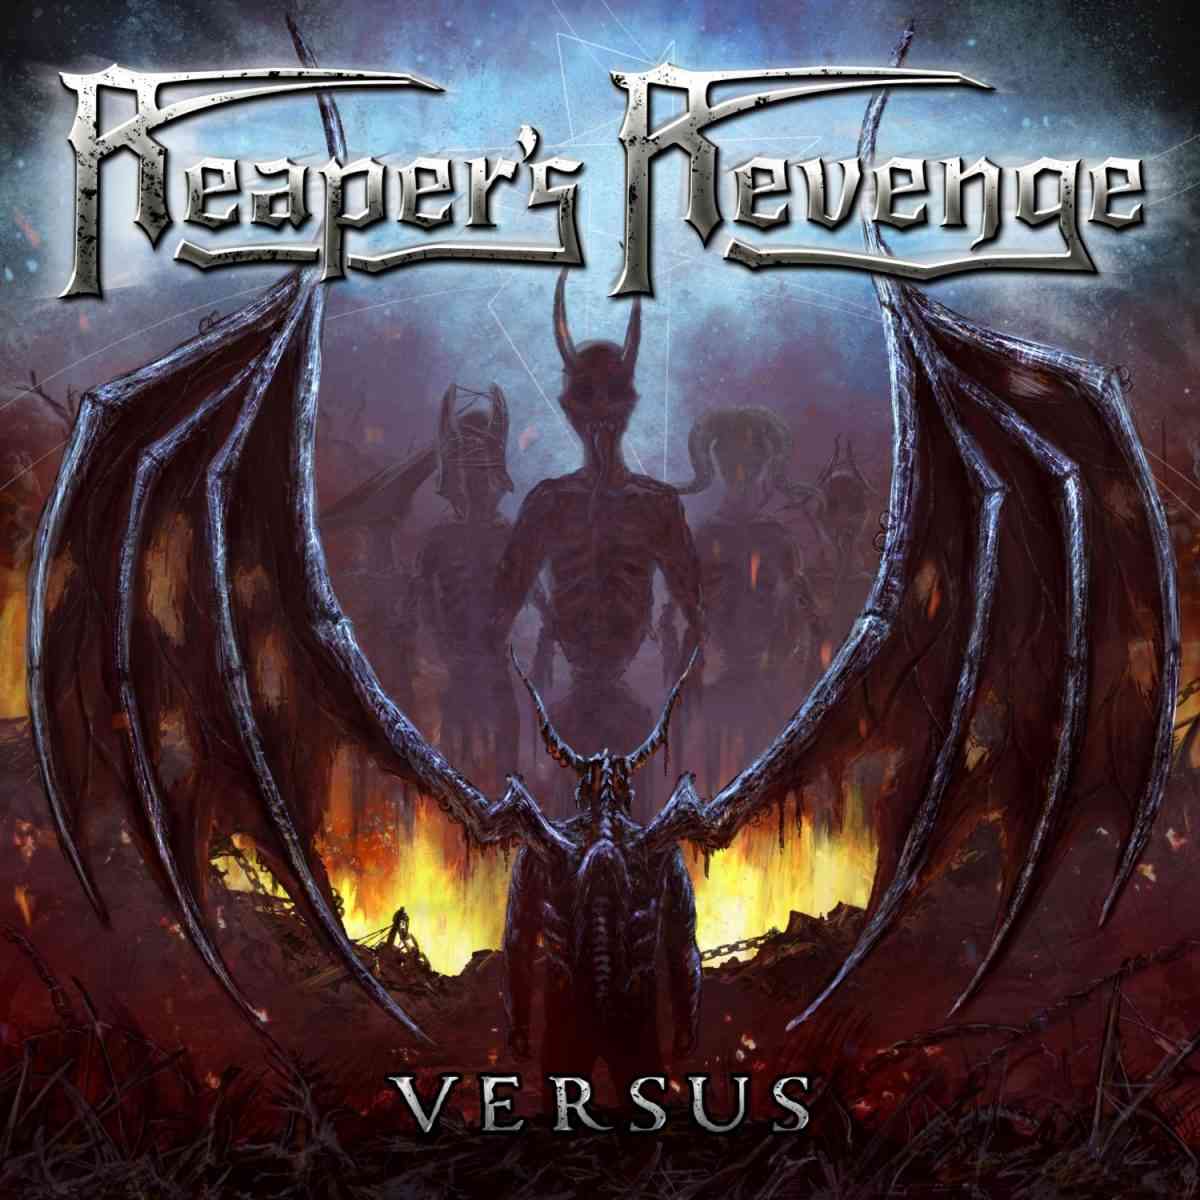 Reapers Revenge - Versus - album cover